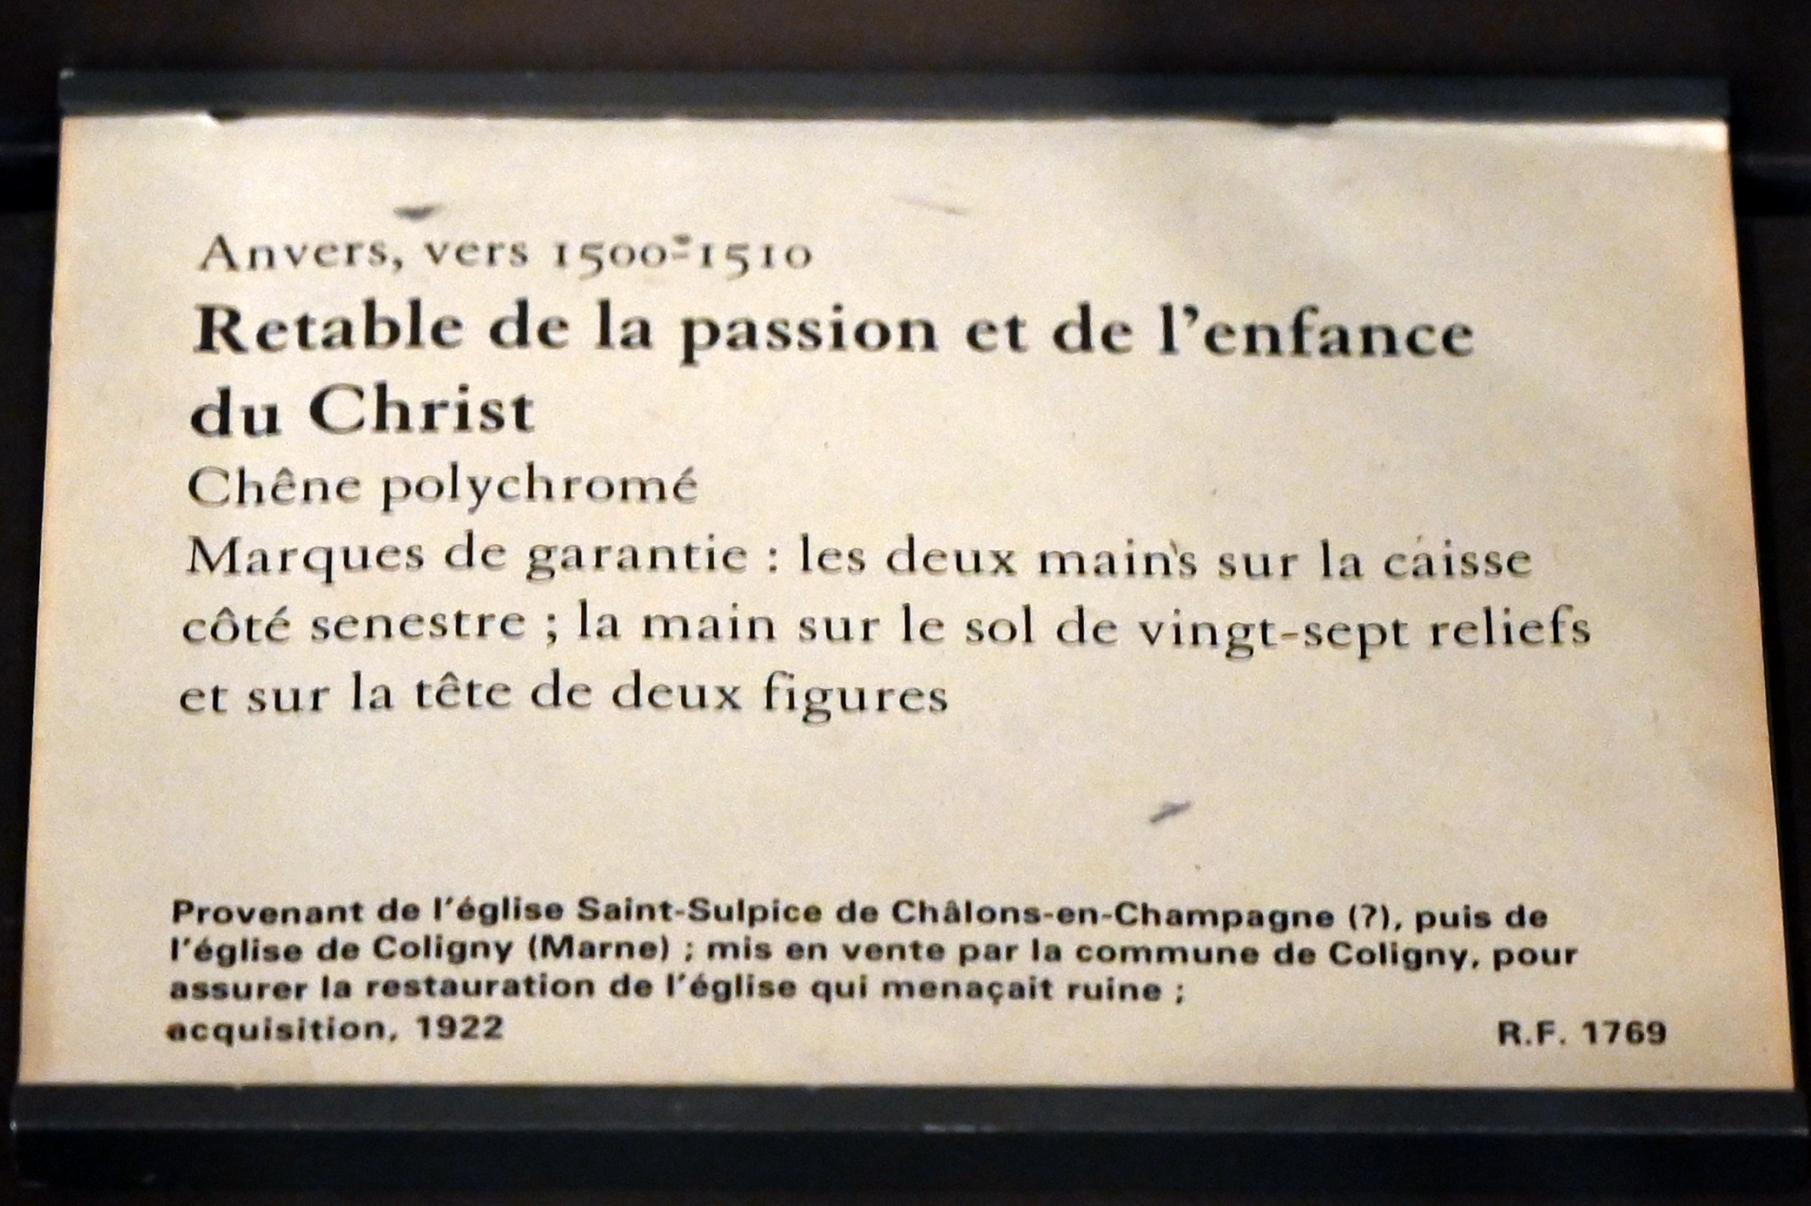 Altarbild der Passion und Kindheit Christi, Châlons-en-Champagne, Abtei von Toussaint, jetzt Paris, Musée du Louvre, Saal 169, um 1500–1510, Bild 7/8